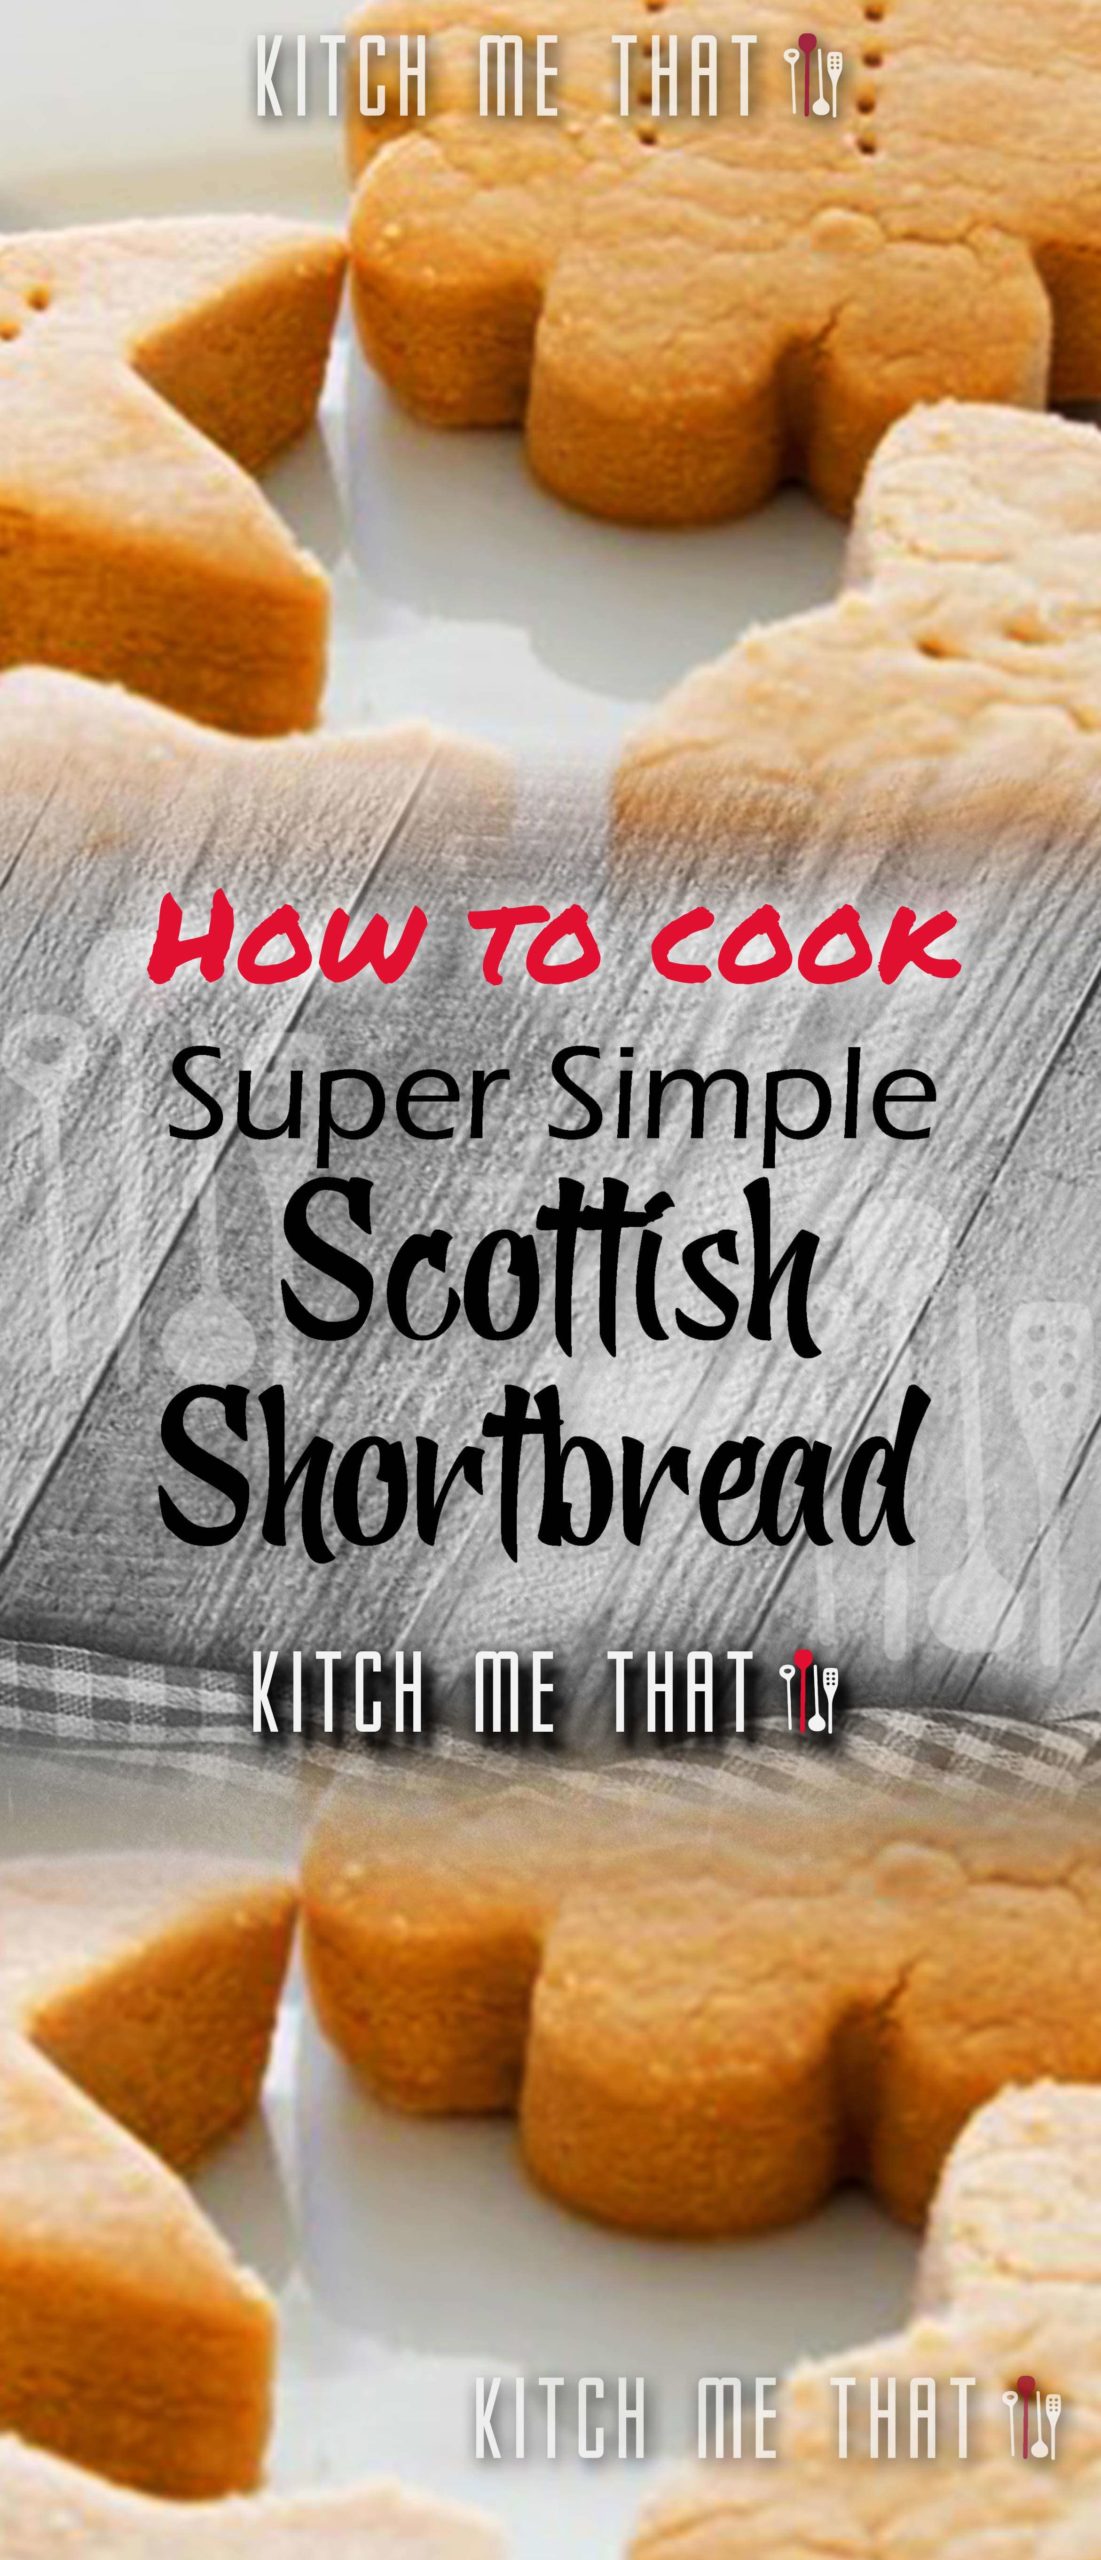 Super Simple Scottish Shortbread